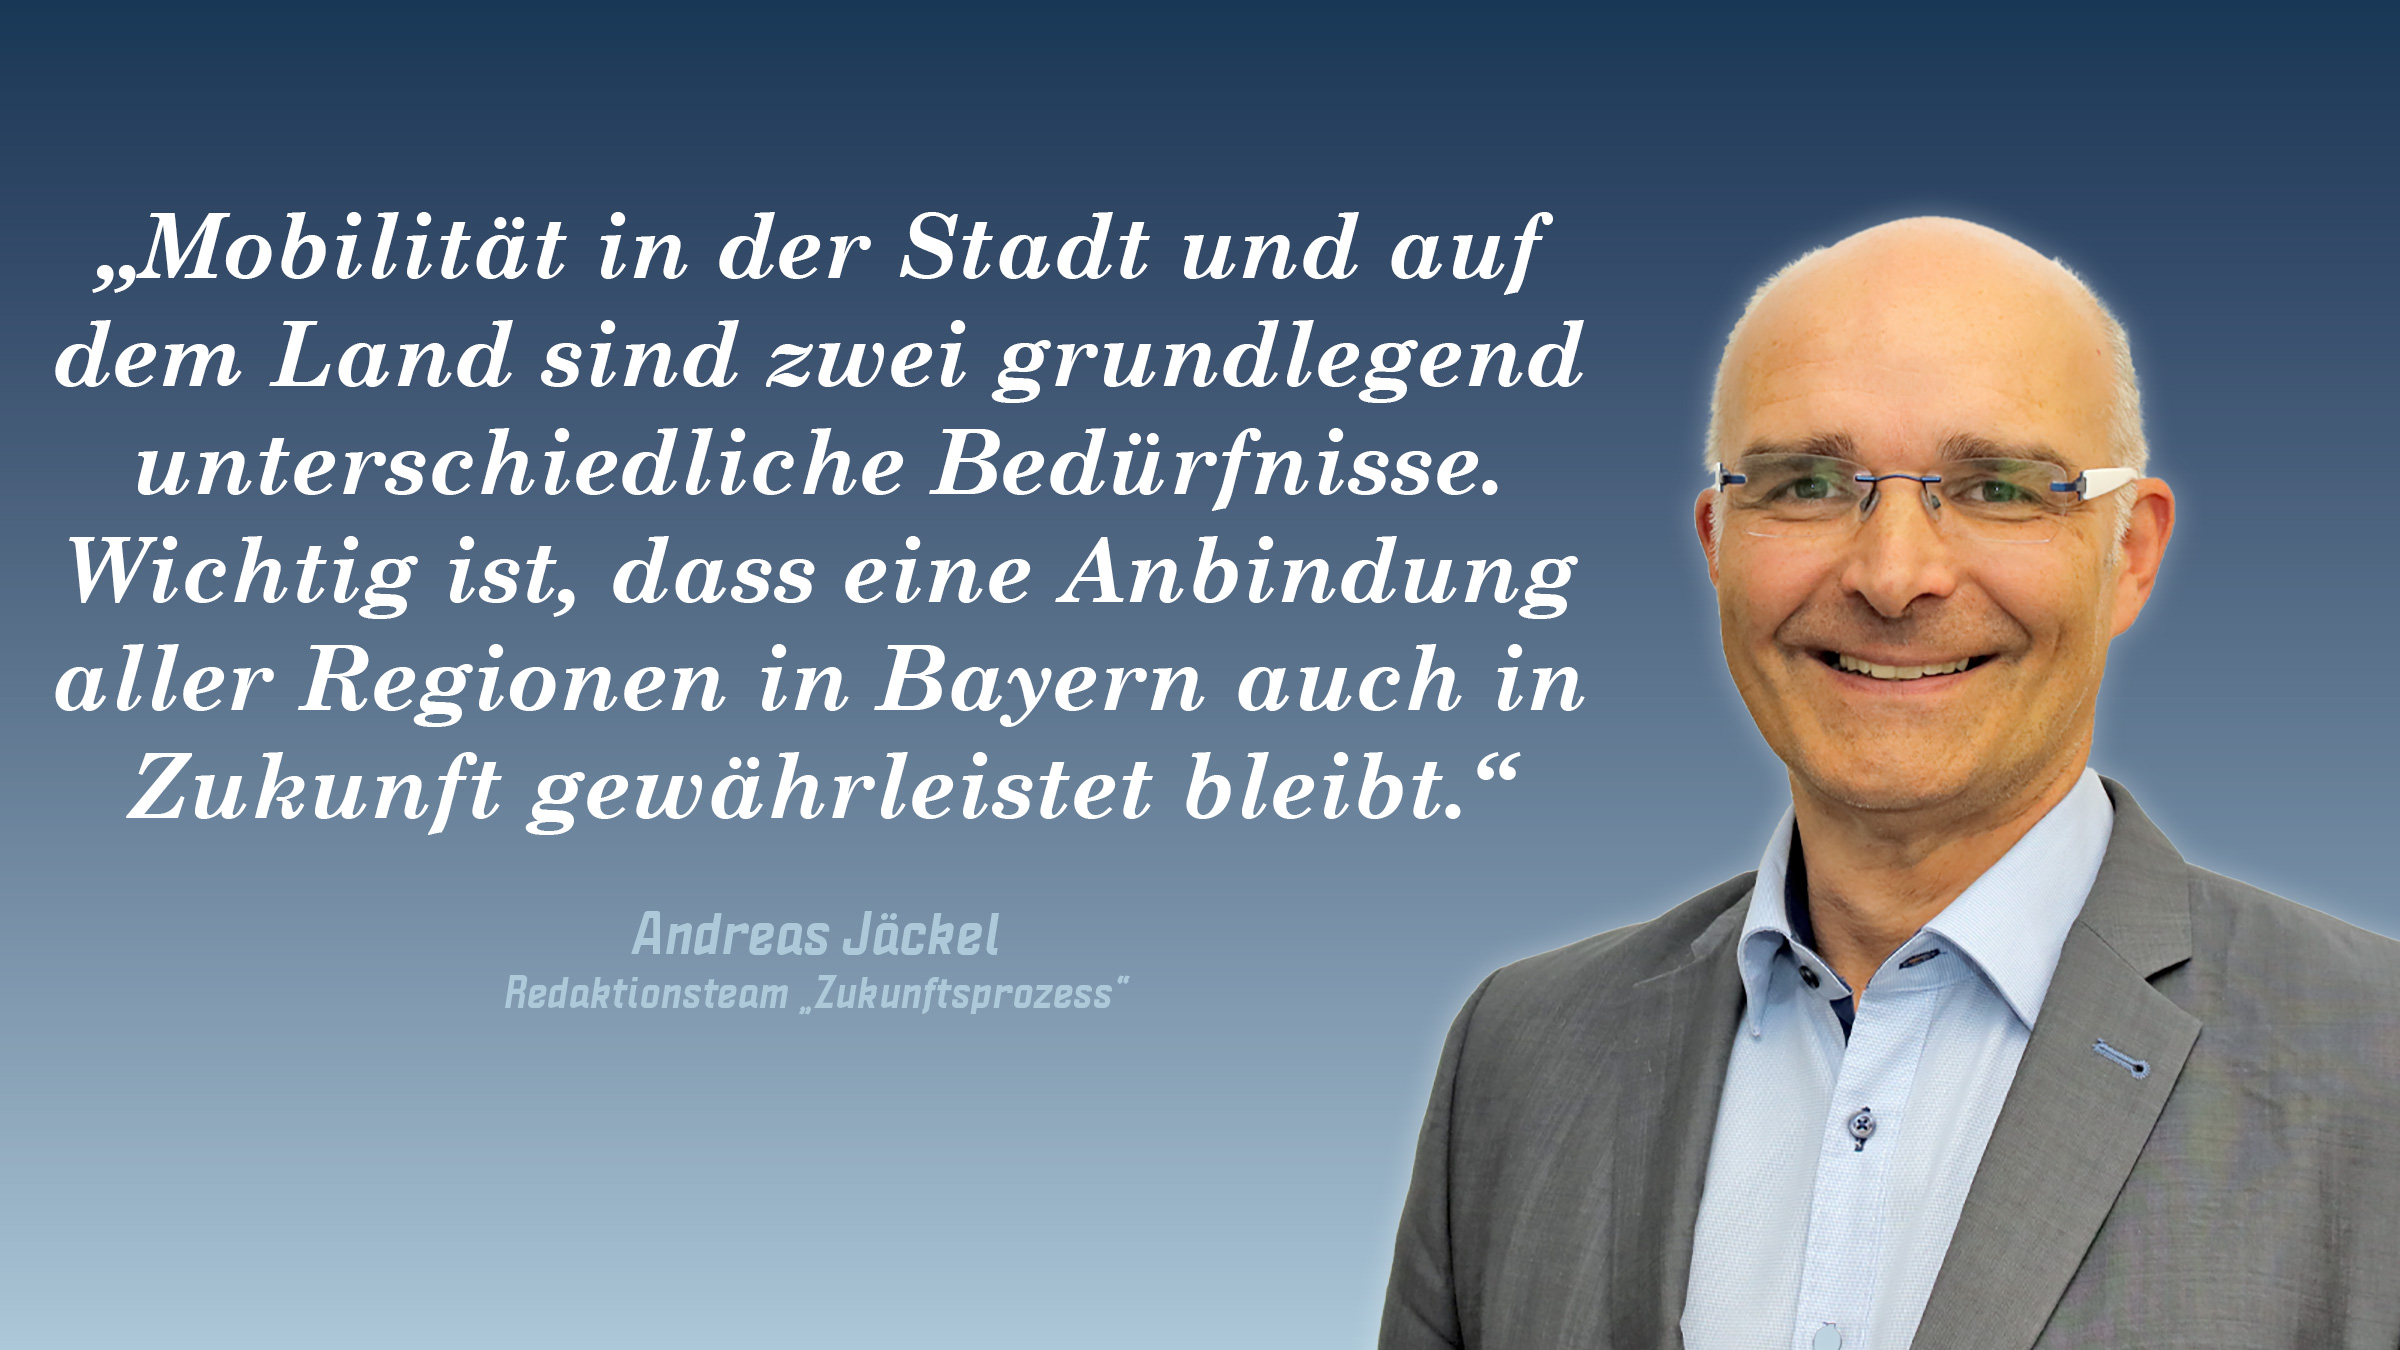 „Mobilität in der Stadt und auf dem Land sind zwei grundlegend unterschiedliche Bedürfnisse. Wichtig ist, dass eine Anbindung aller Regionen in Bayern auch in Zukunft gewährleistet bleibt.“ Andreas Jäckel (Redaktionsteam "Zukunftsprozess")